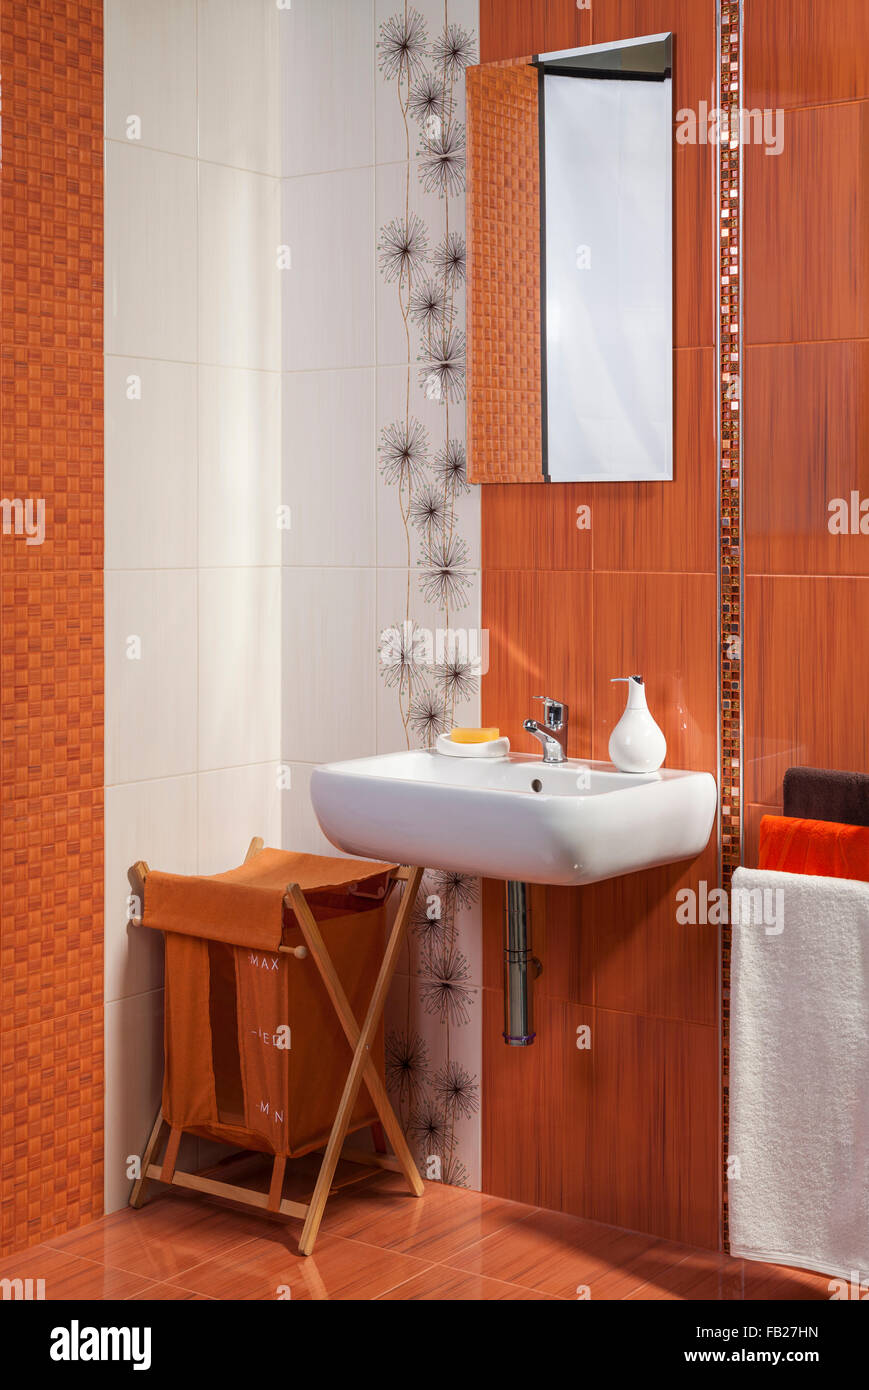 Détail d'une salle de bains privative moderne intérieur en orange avec motif floral Banque D'Images